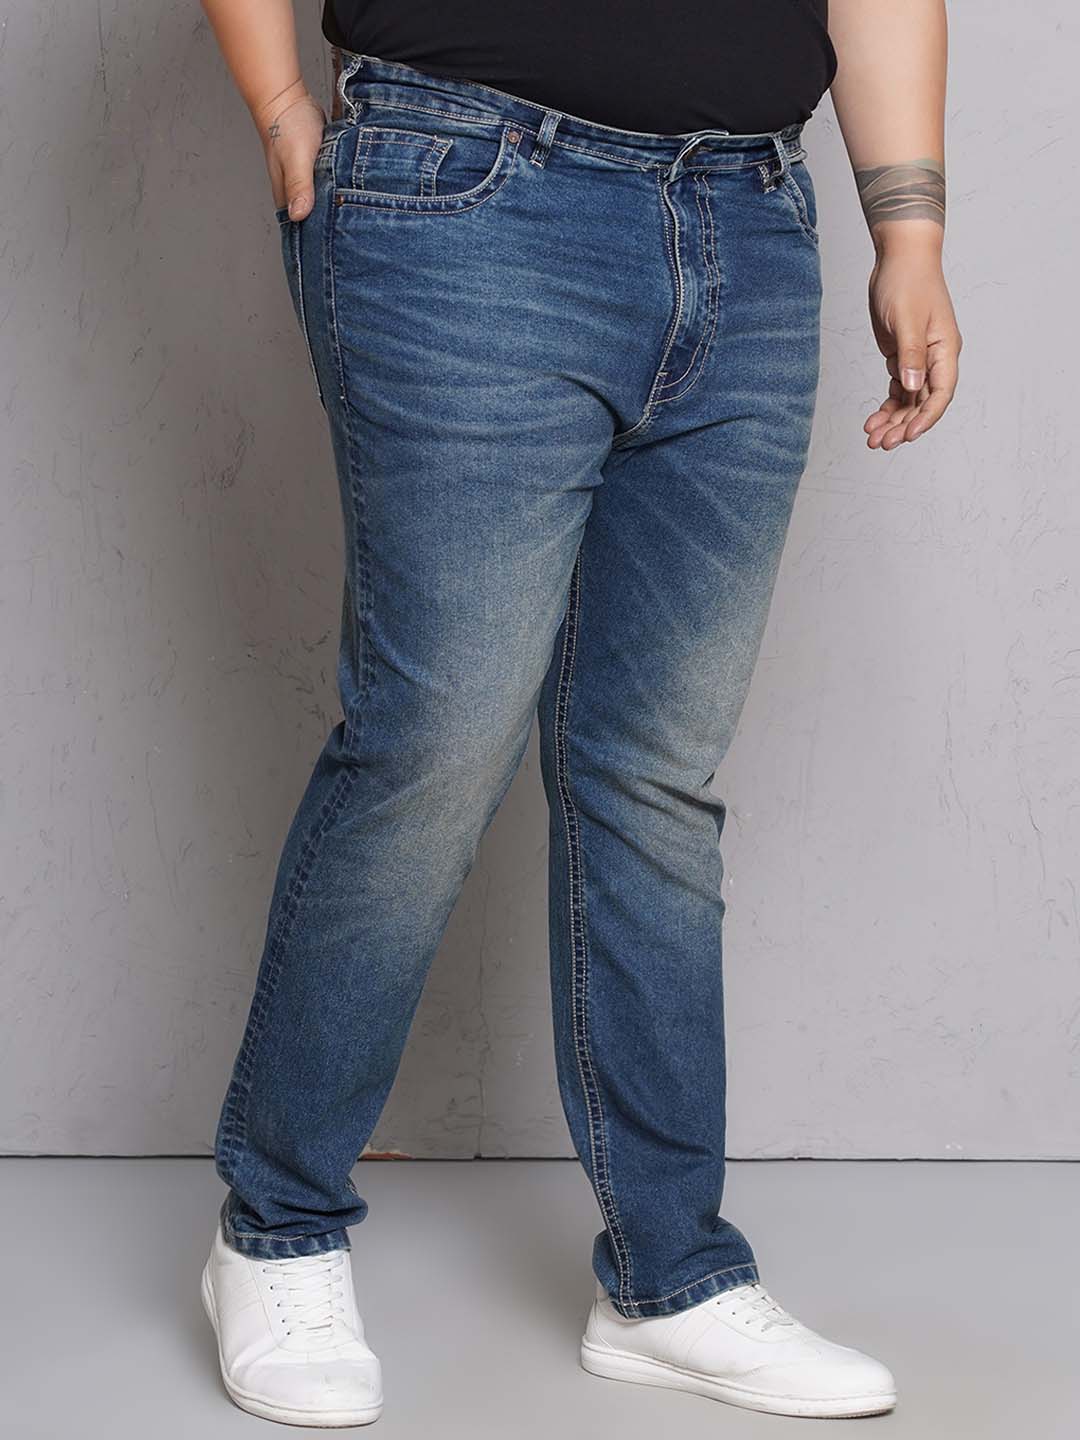 bottomwear/jeans/EJPJ25147/ejpj25147-3.jpg